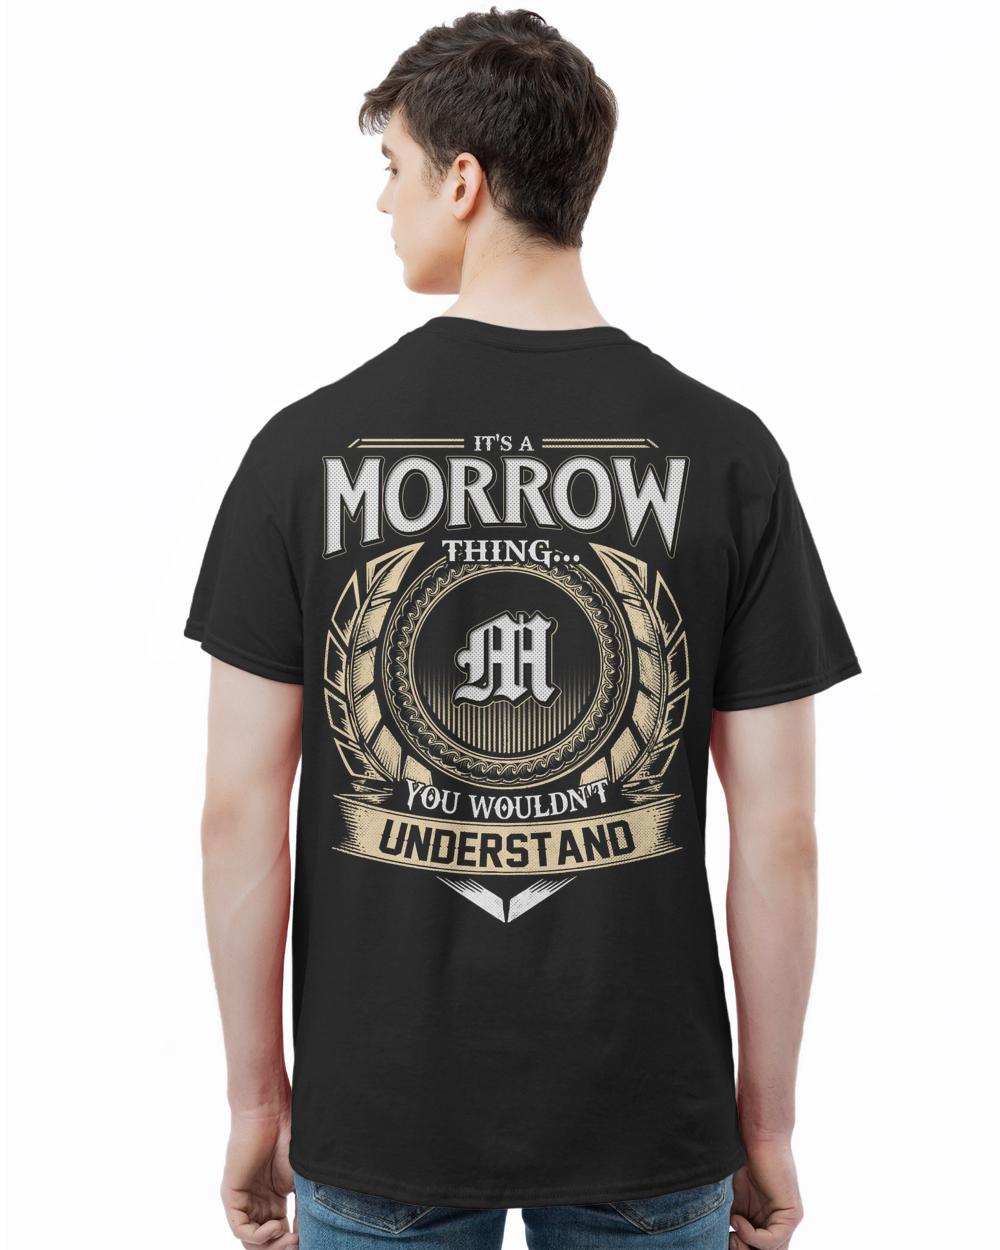 MORROW-13K-46-01